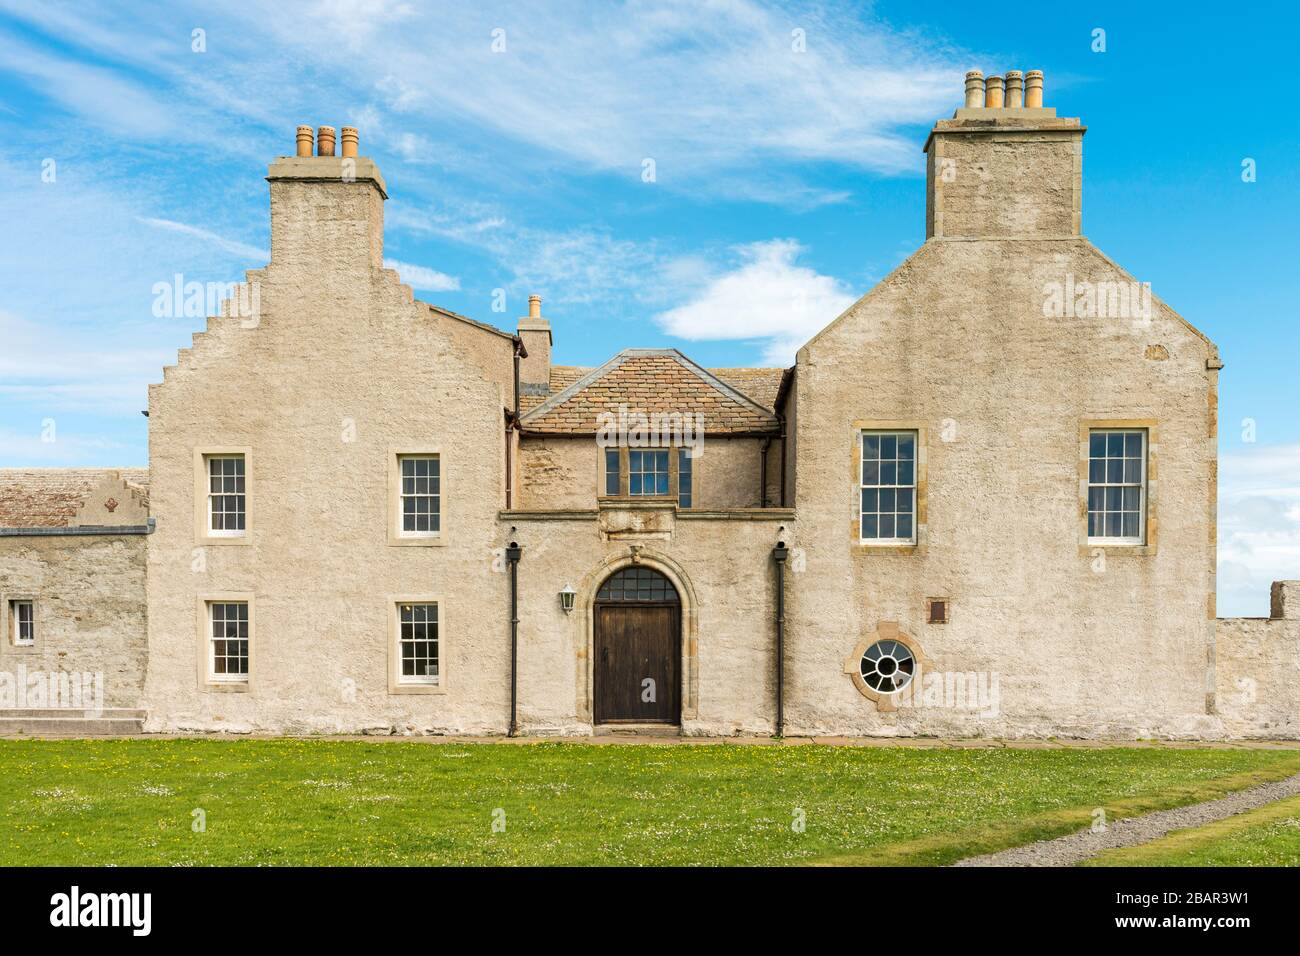 Skaill House ist ein historisches ehemaliges Gutshaus auf dem Festland, Orkney, in der Nähe der jungsteinzeitlichen Siedlung Skara Brae. Schottland, Großbritannien. Stockfoto